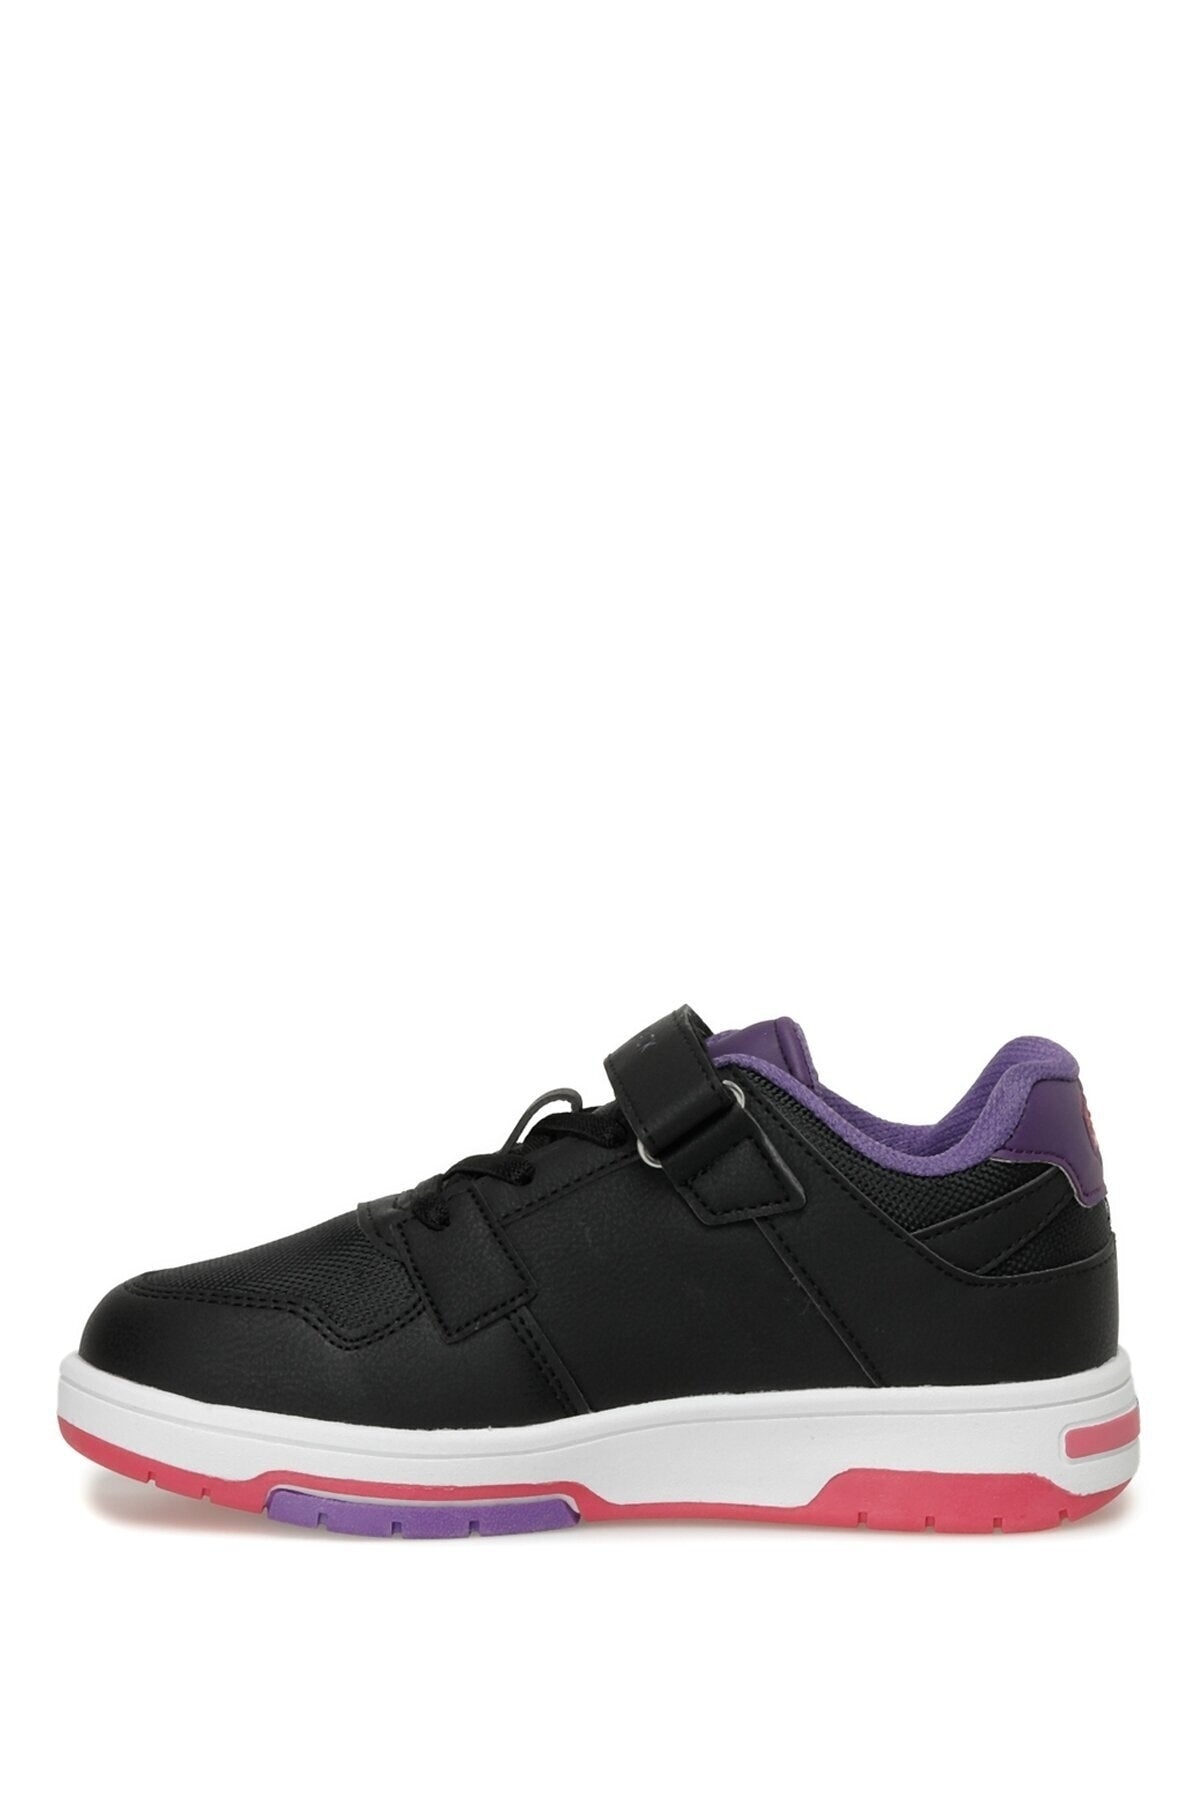 SAKE 3FX Black Girls' Sneaker